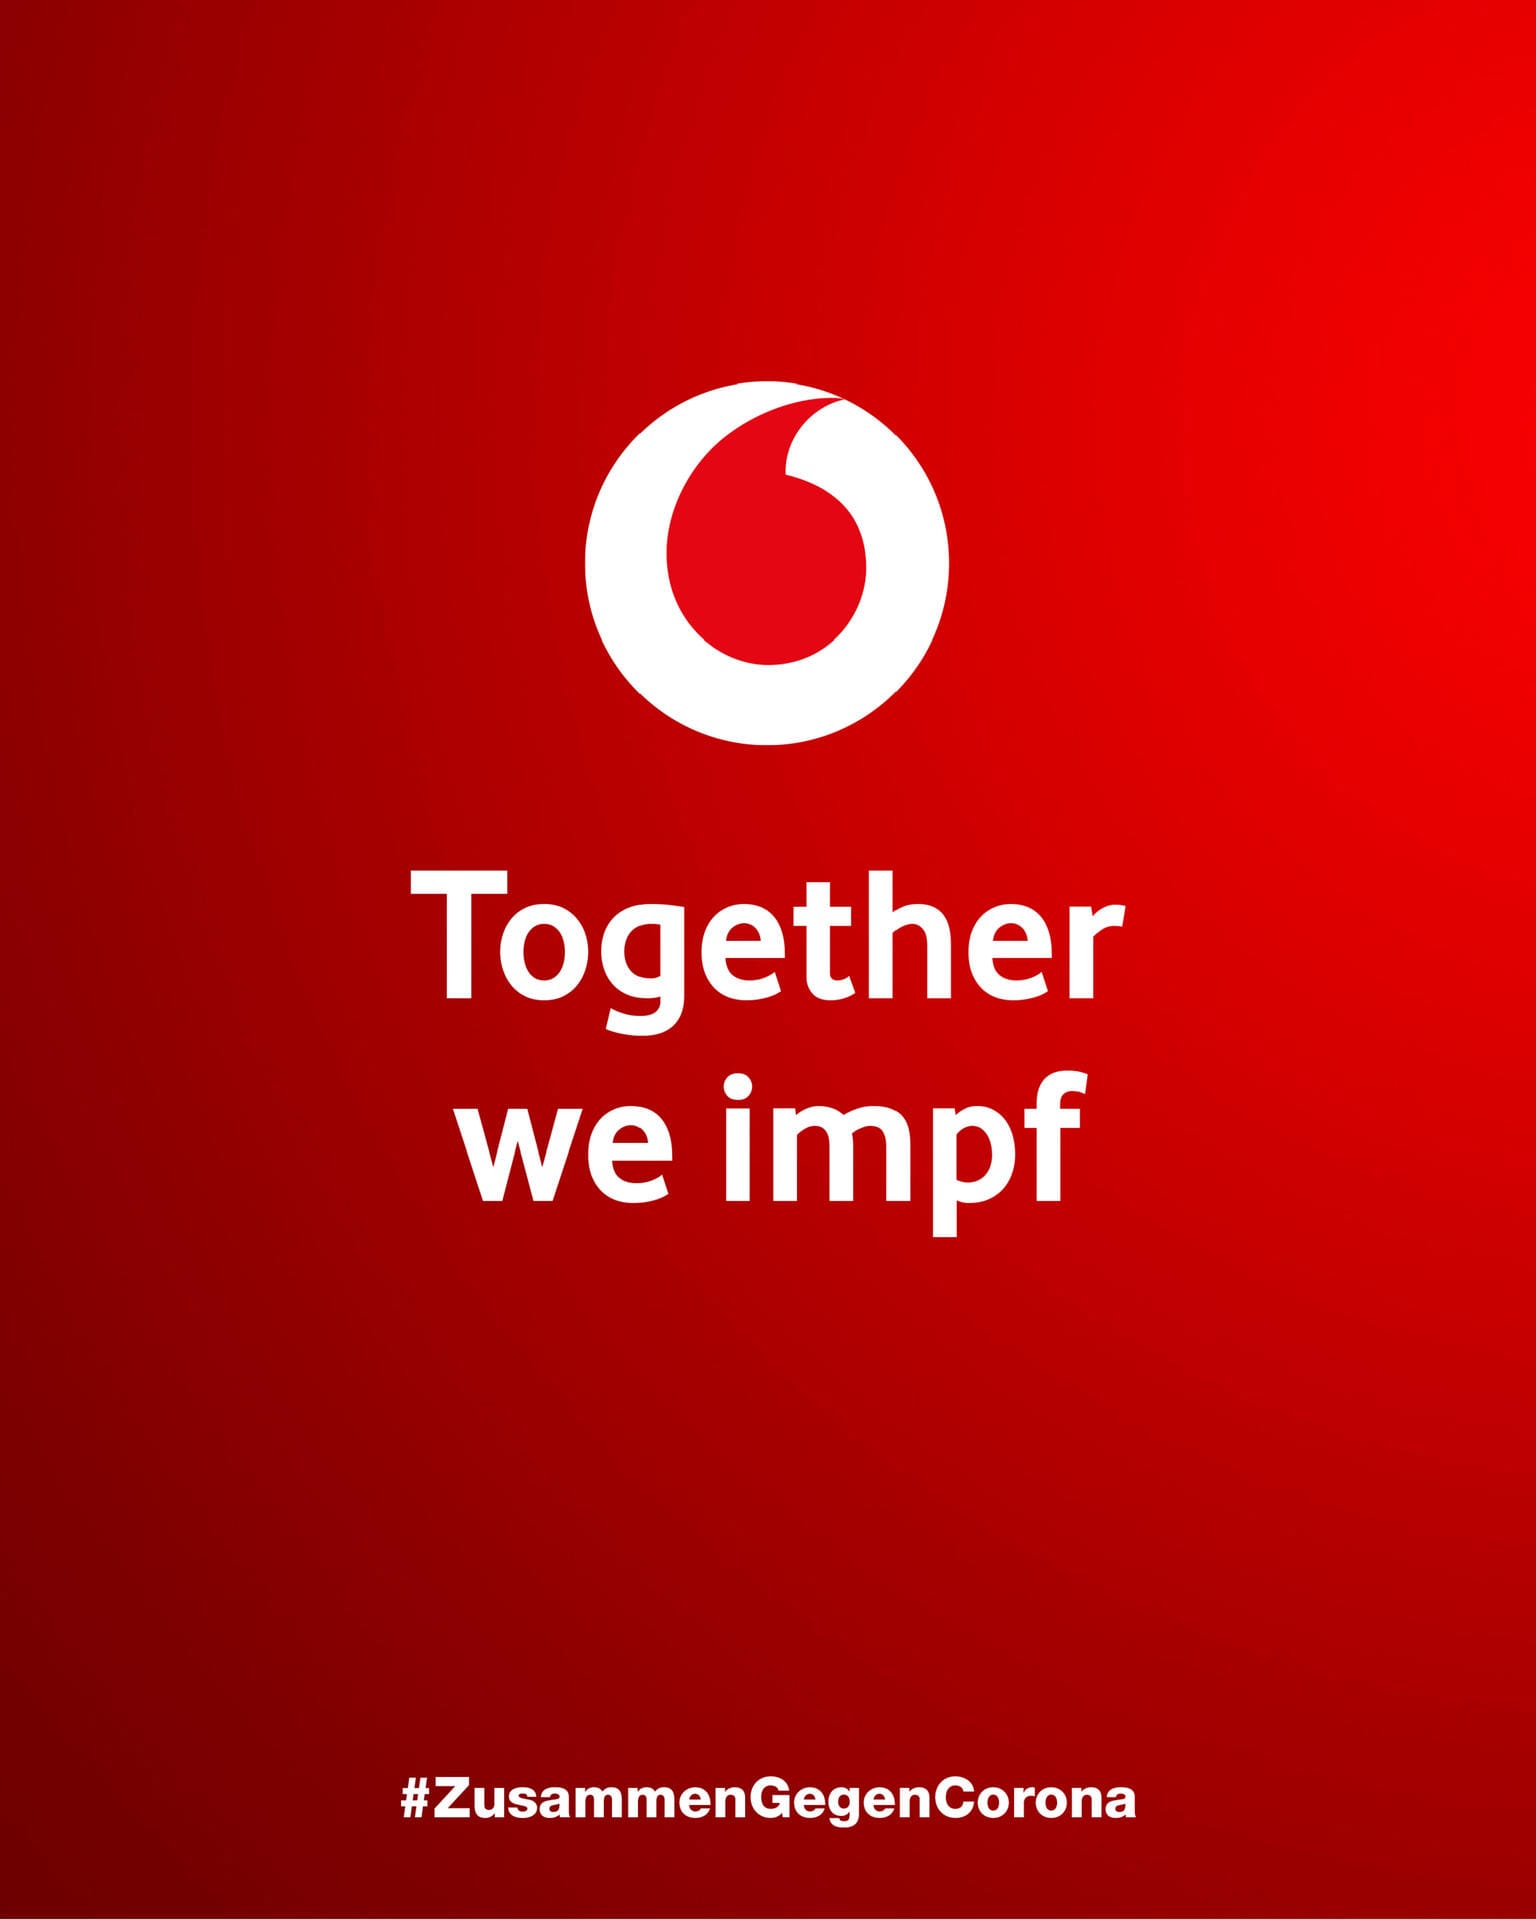 Bei Vodafone heißt es: "Together we impf".